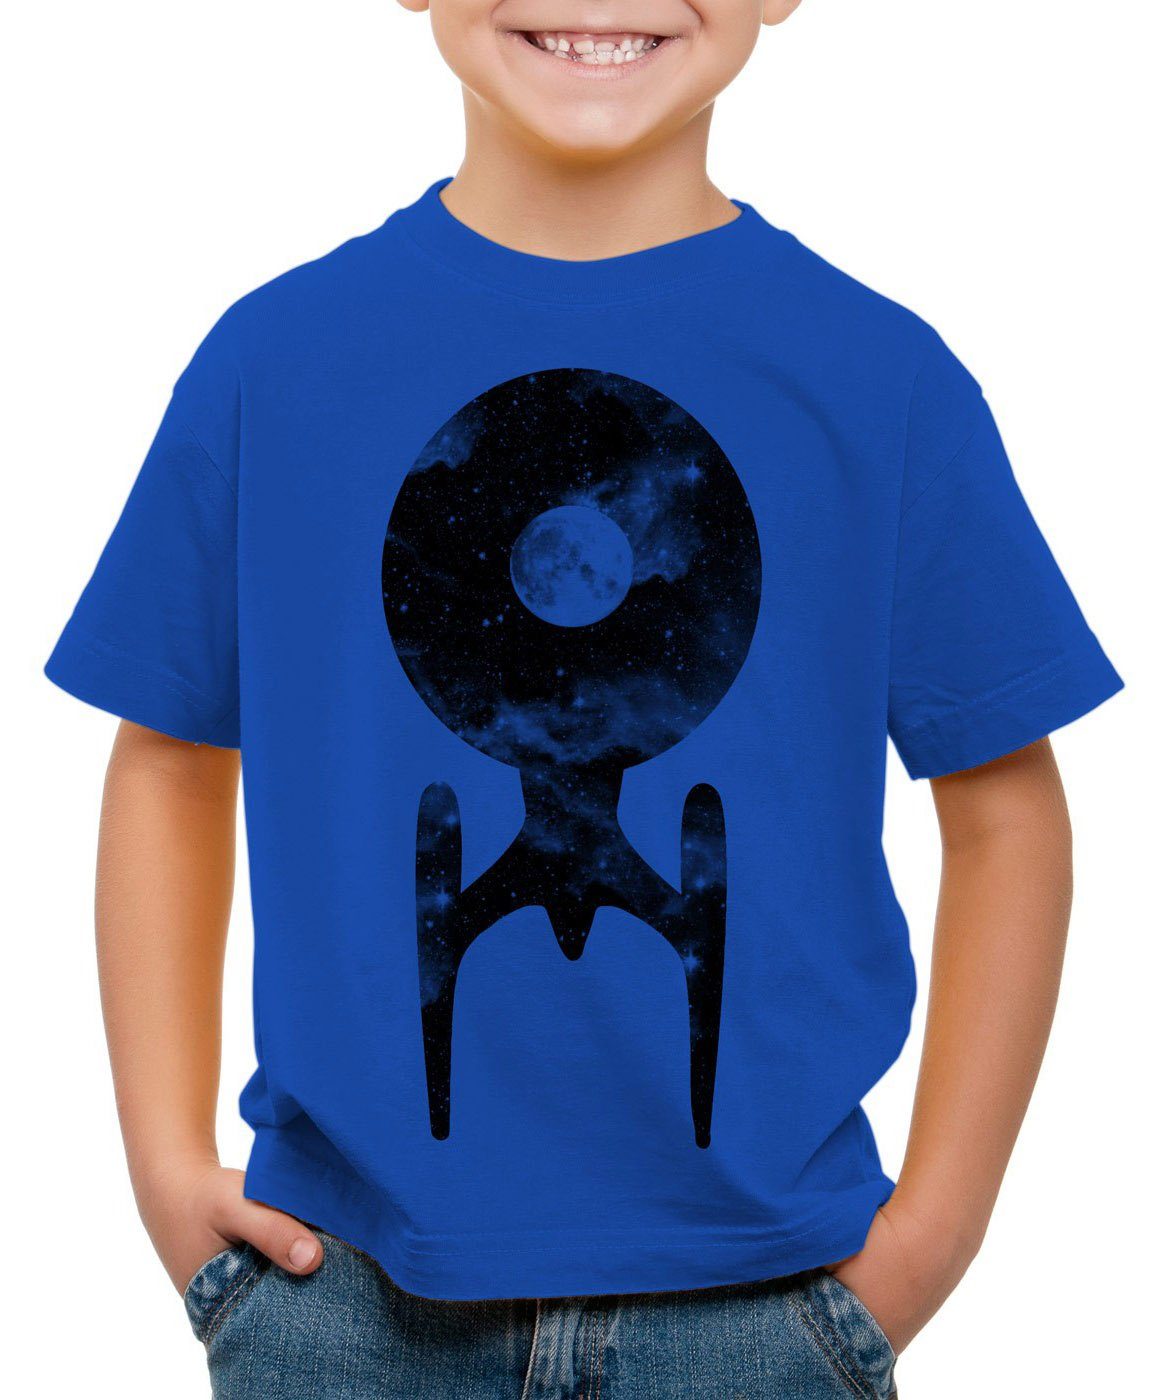 Print-Shirt Kinder trekkie star Trek weiß T-Shirt style3 Raumschiff